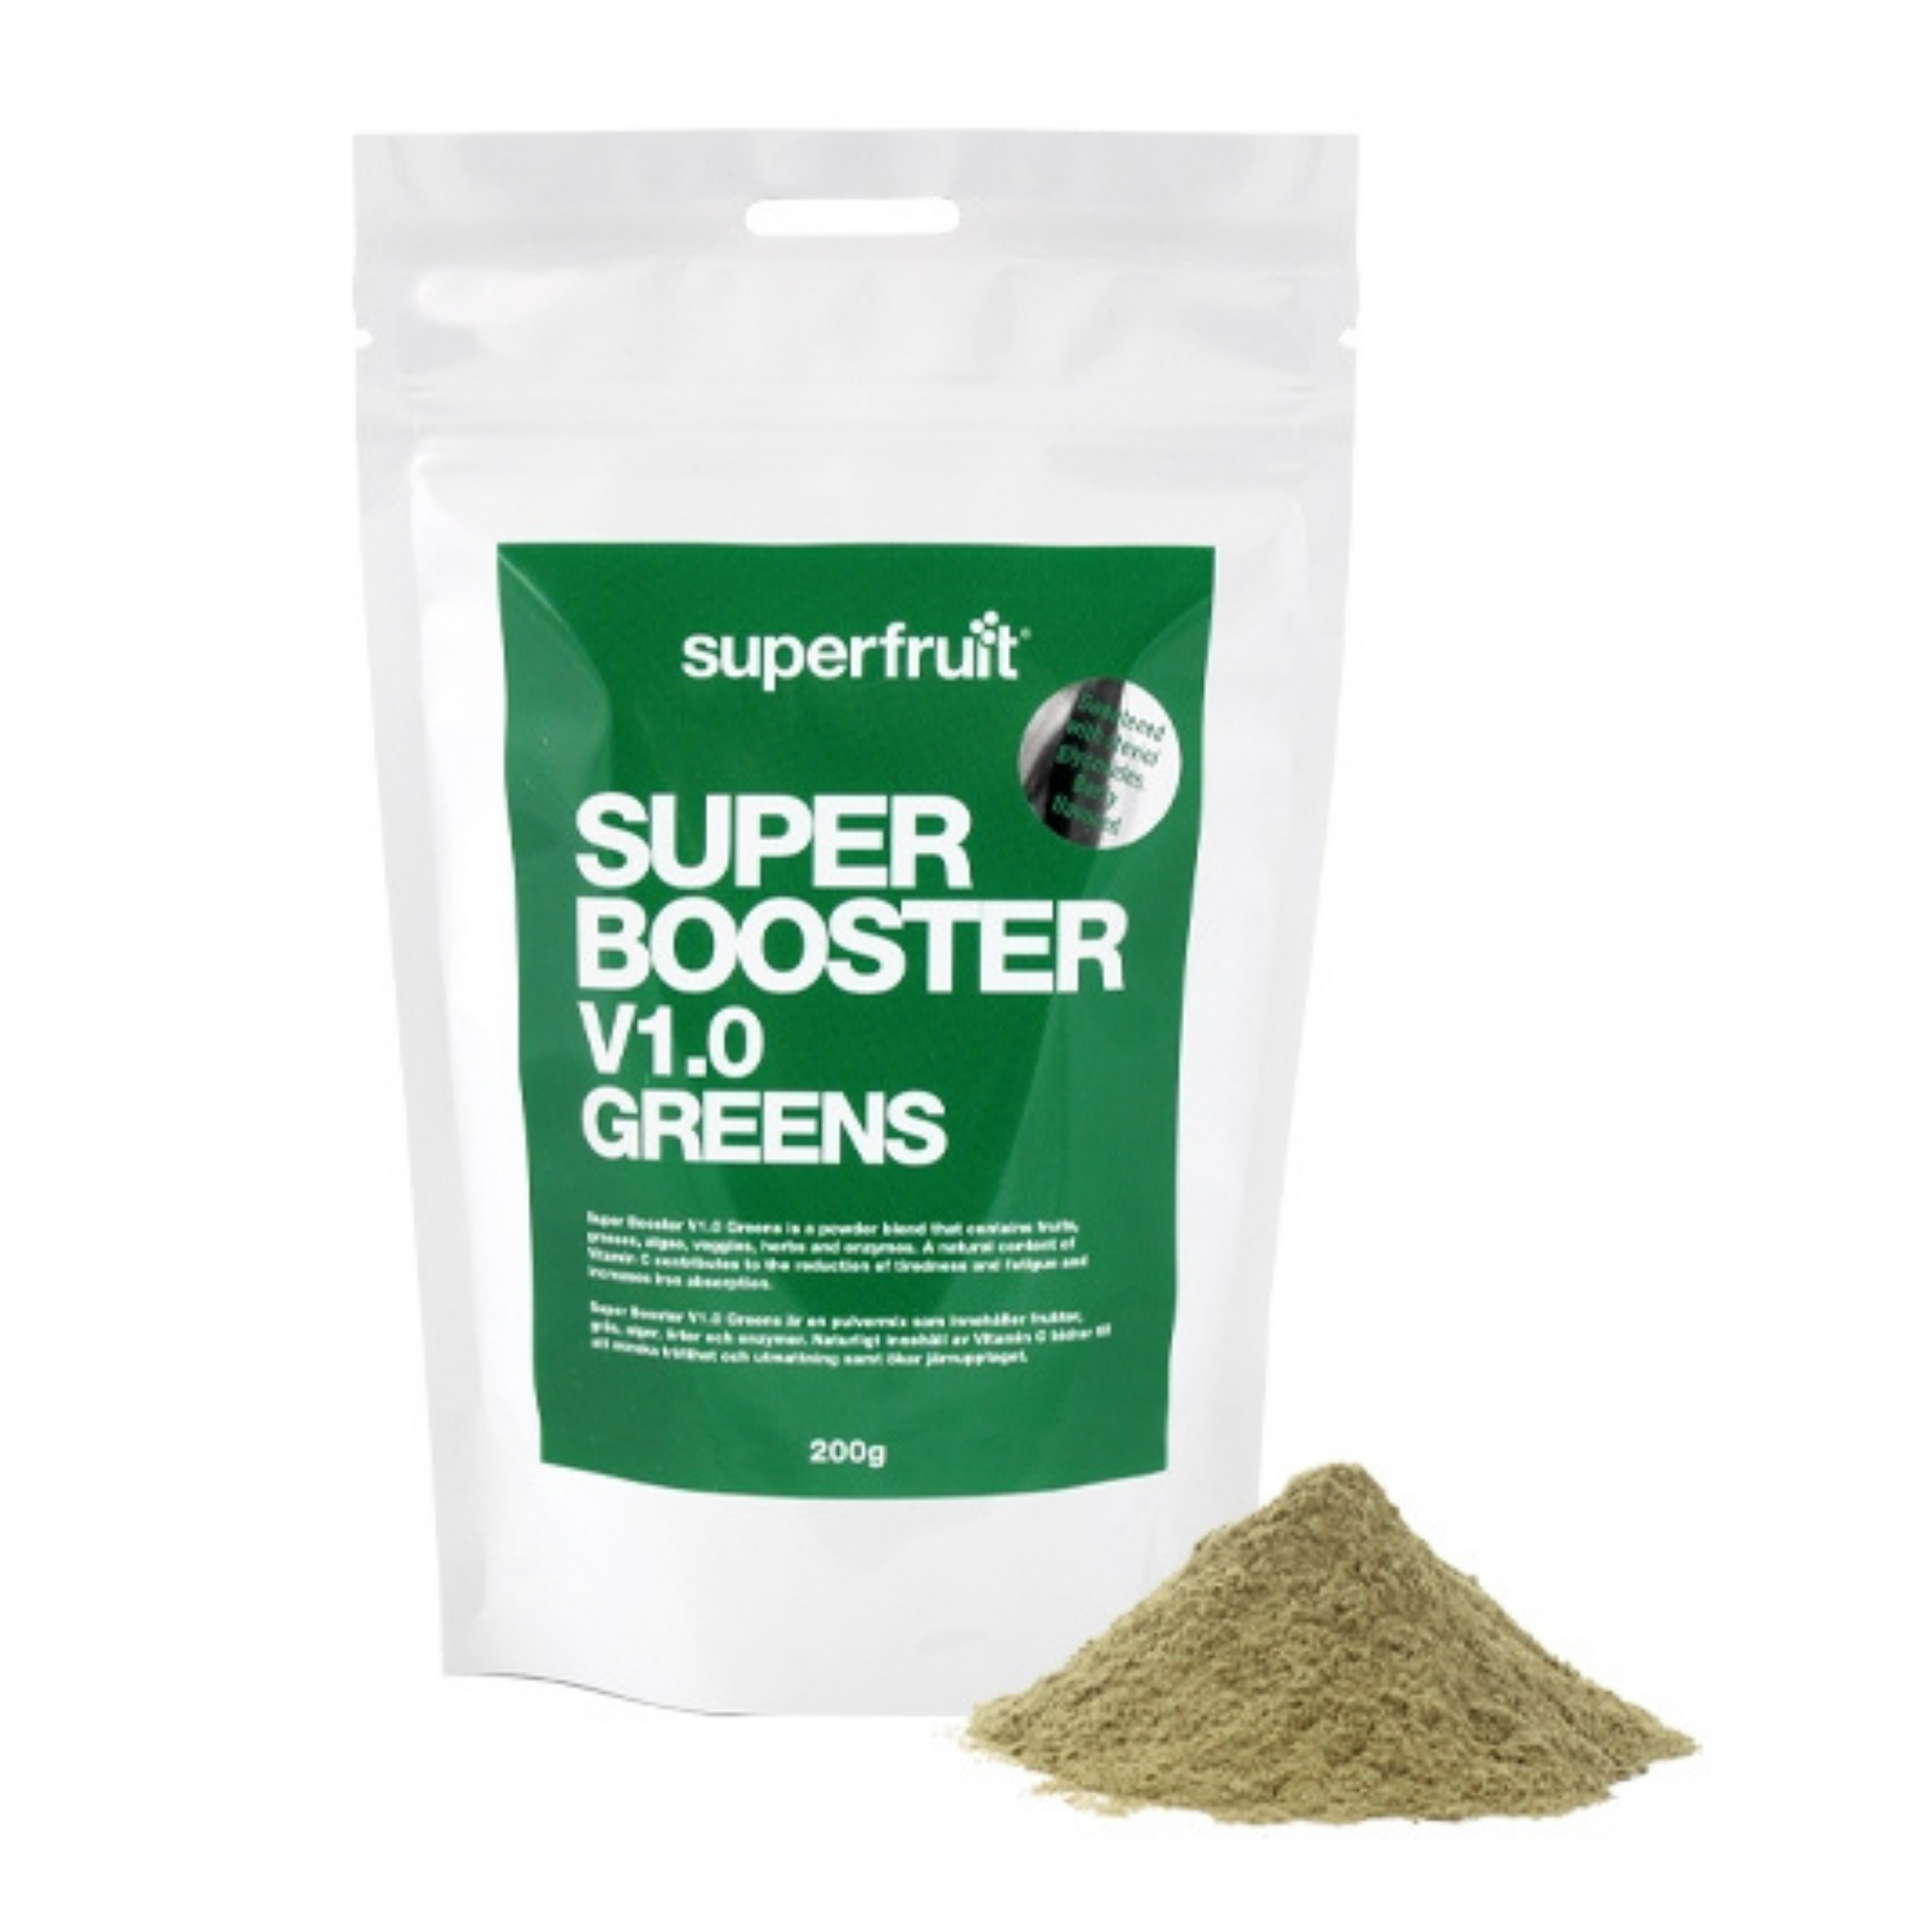 Super Booster V1.0 Greens 200g